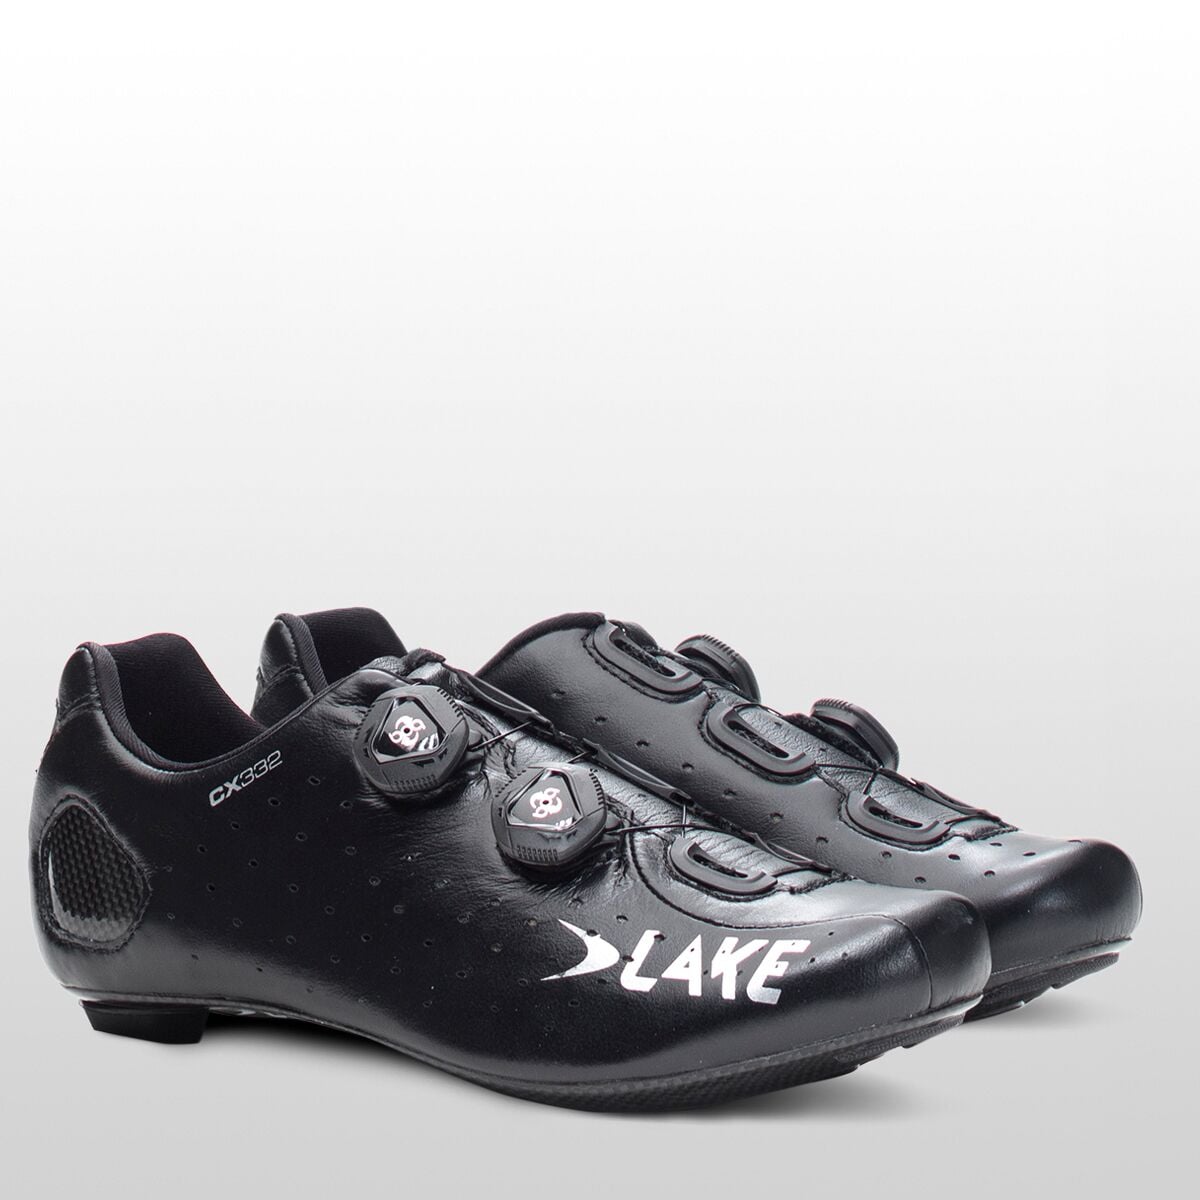 Lake CX332 Cycling Shoe - Men's - Men